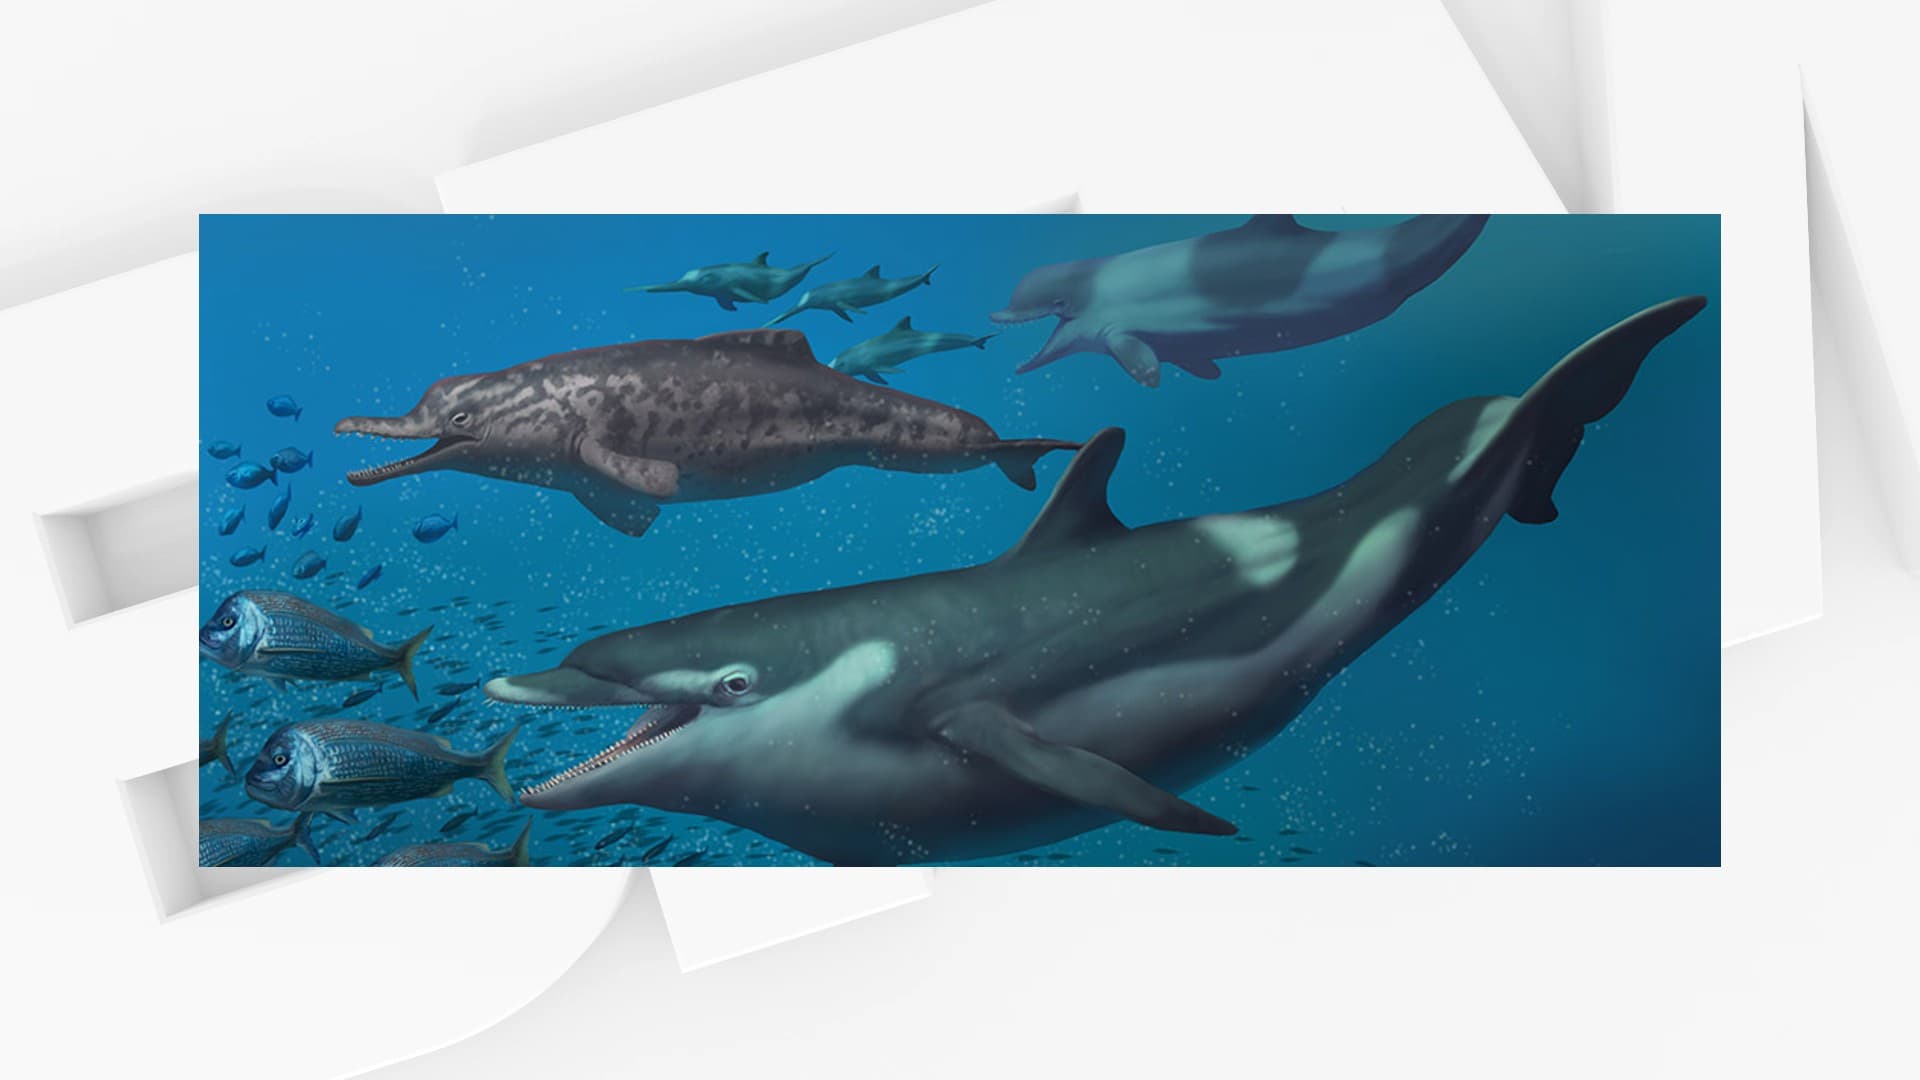 Des espèces de dauphins vivant il y a 20 millions d'années identifiées en Suisse - BFMTV